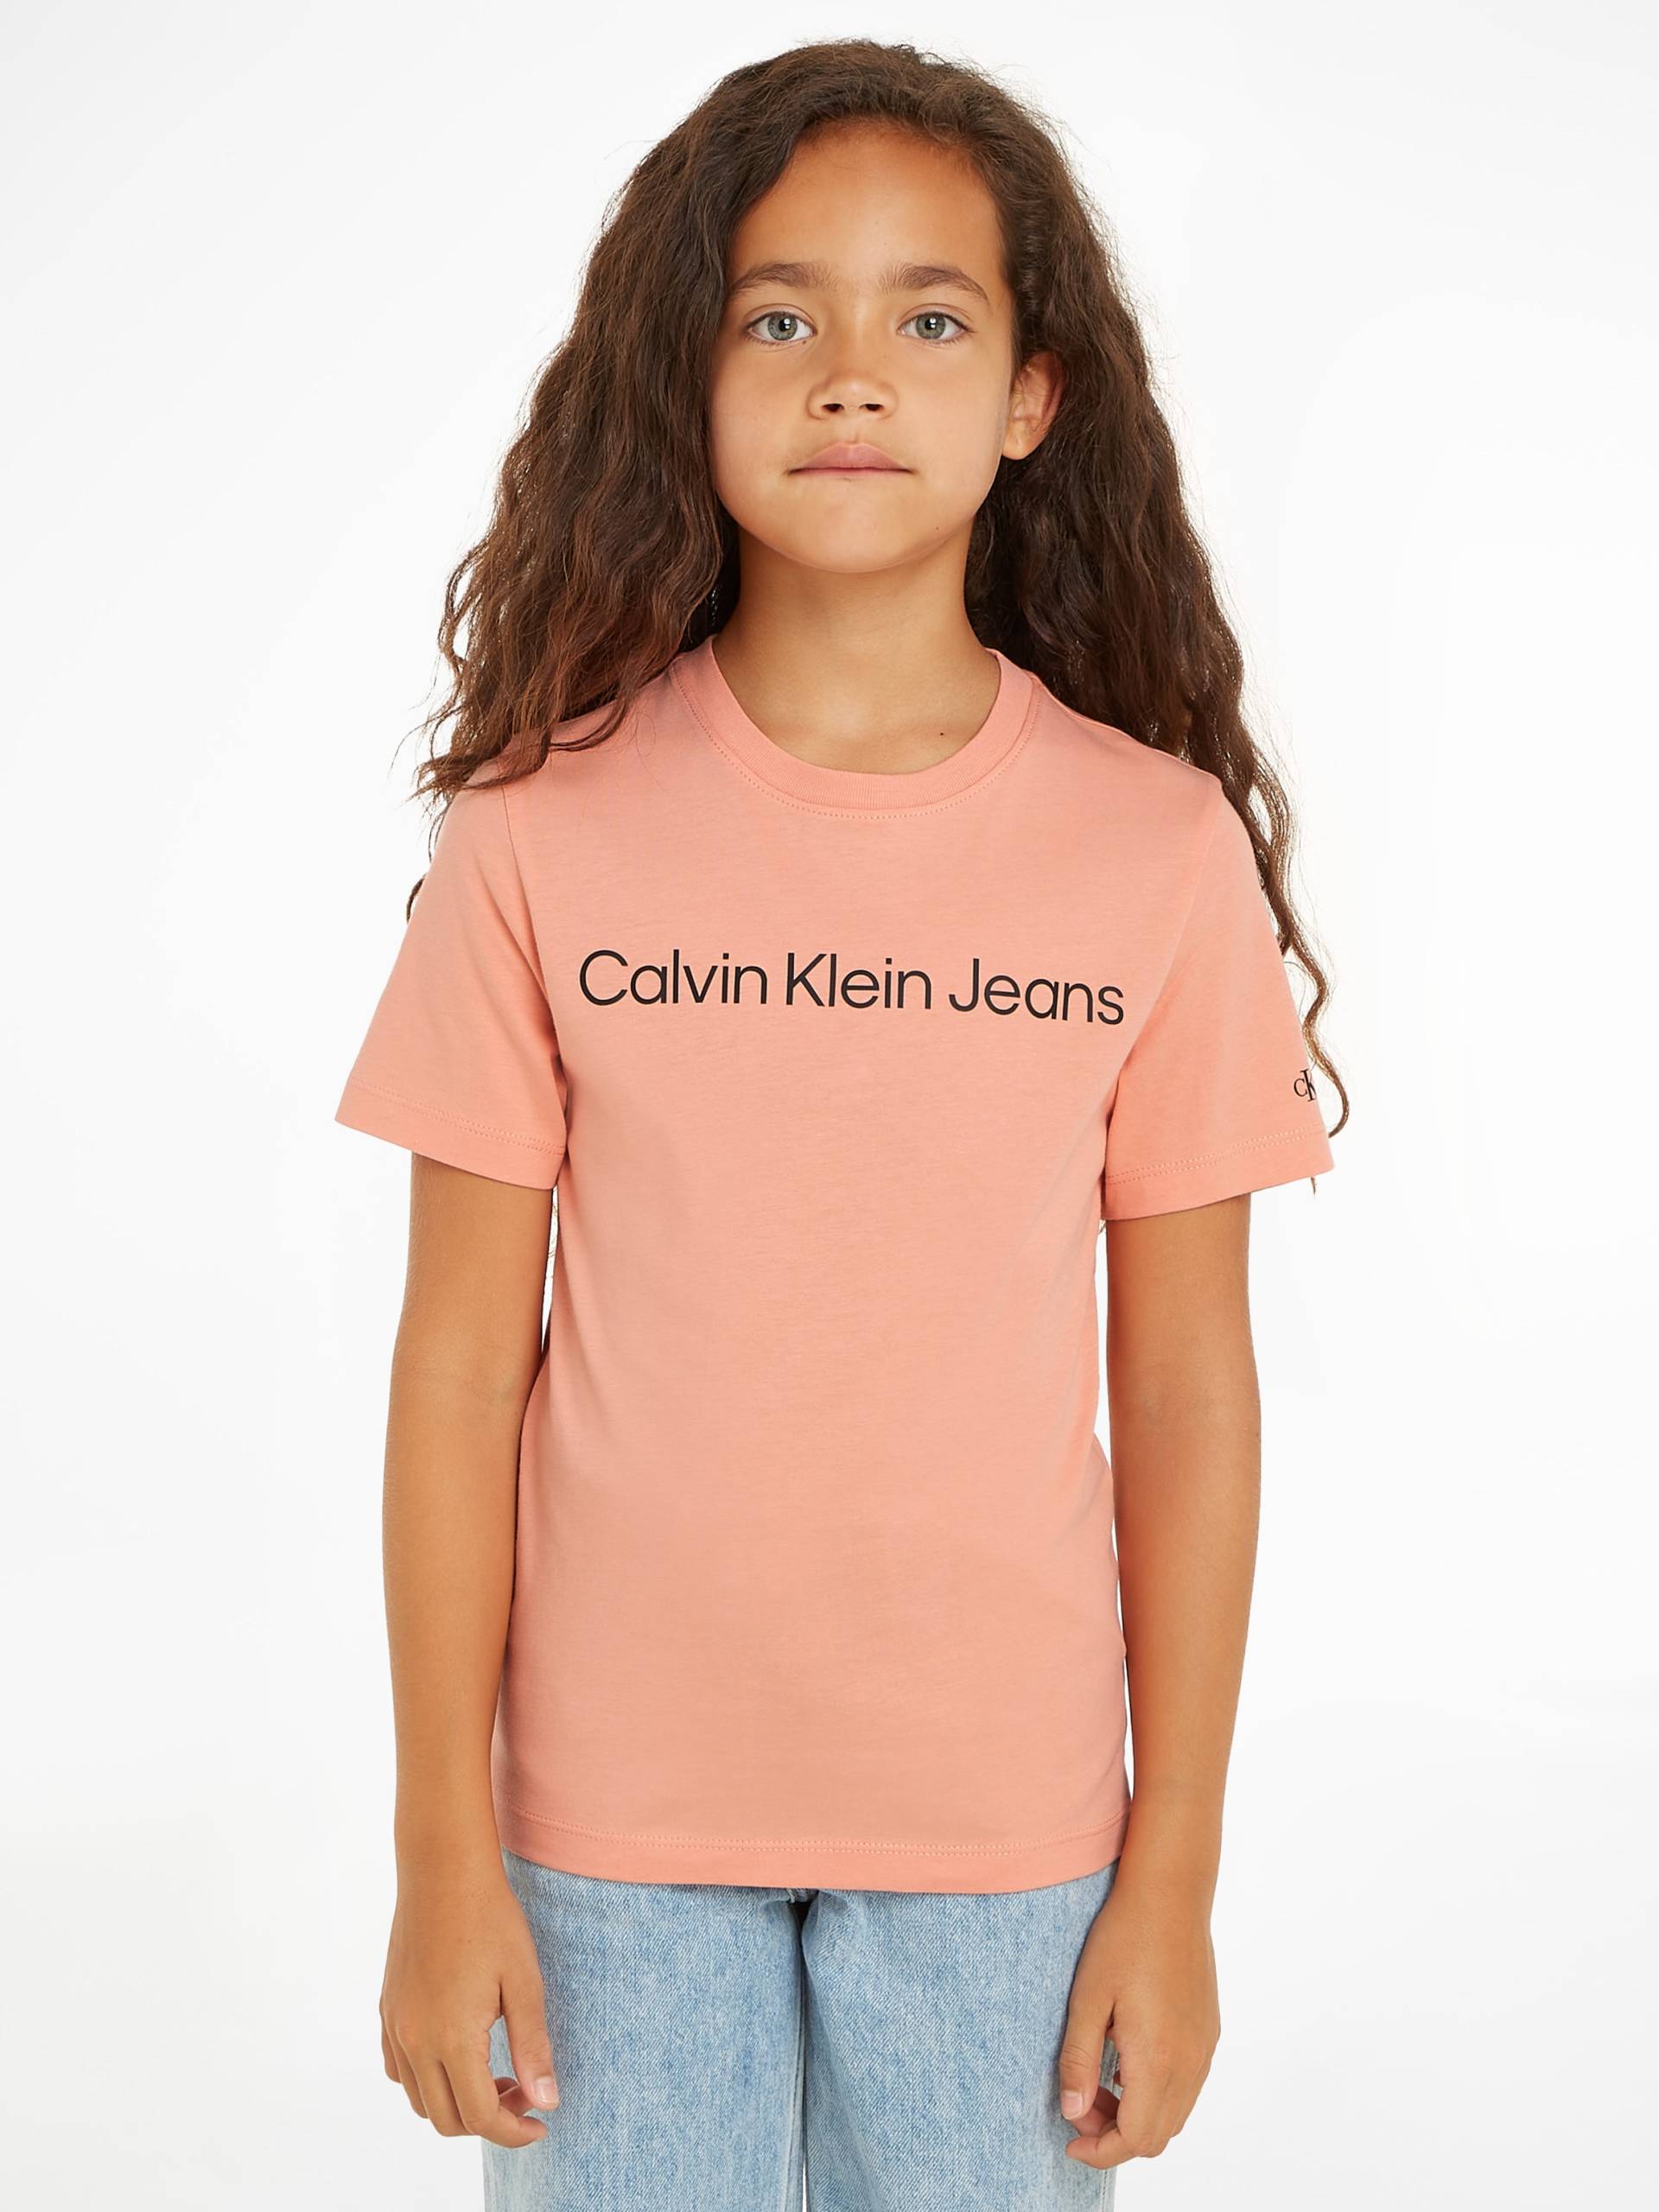 Calvin Klein Jeans Sweatshirt »INST. LOGO SS T-SHIRT« von Calvin Klein Jeans